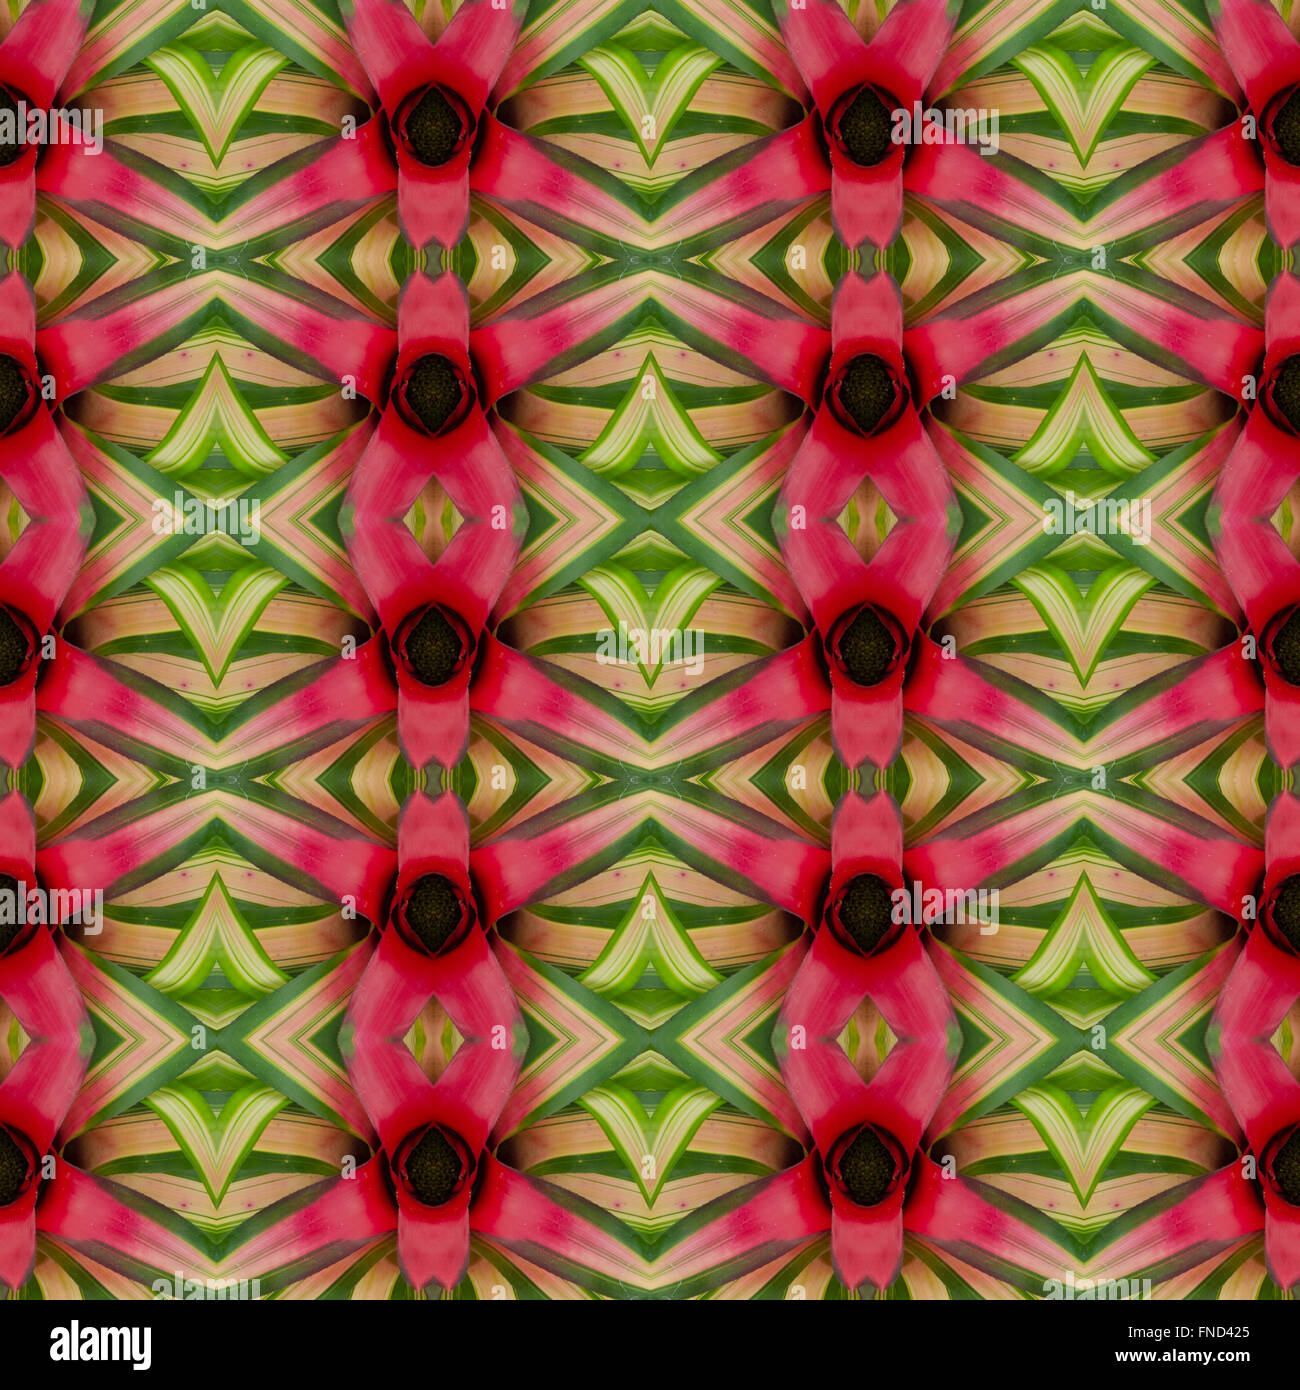 Bromelie Blume Musterdesign Hintergrund Stockfoto